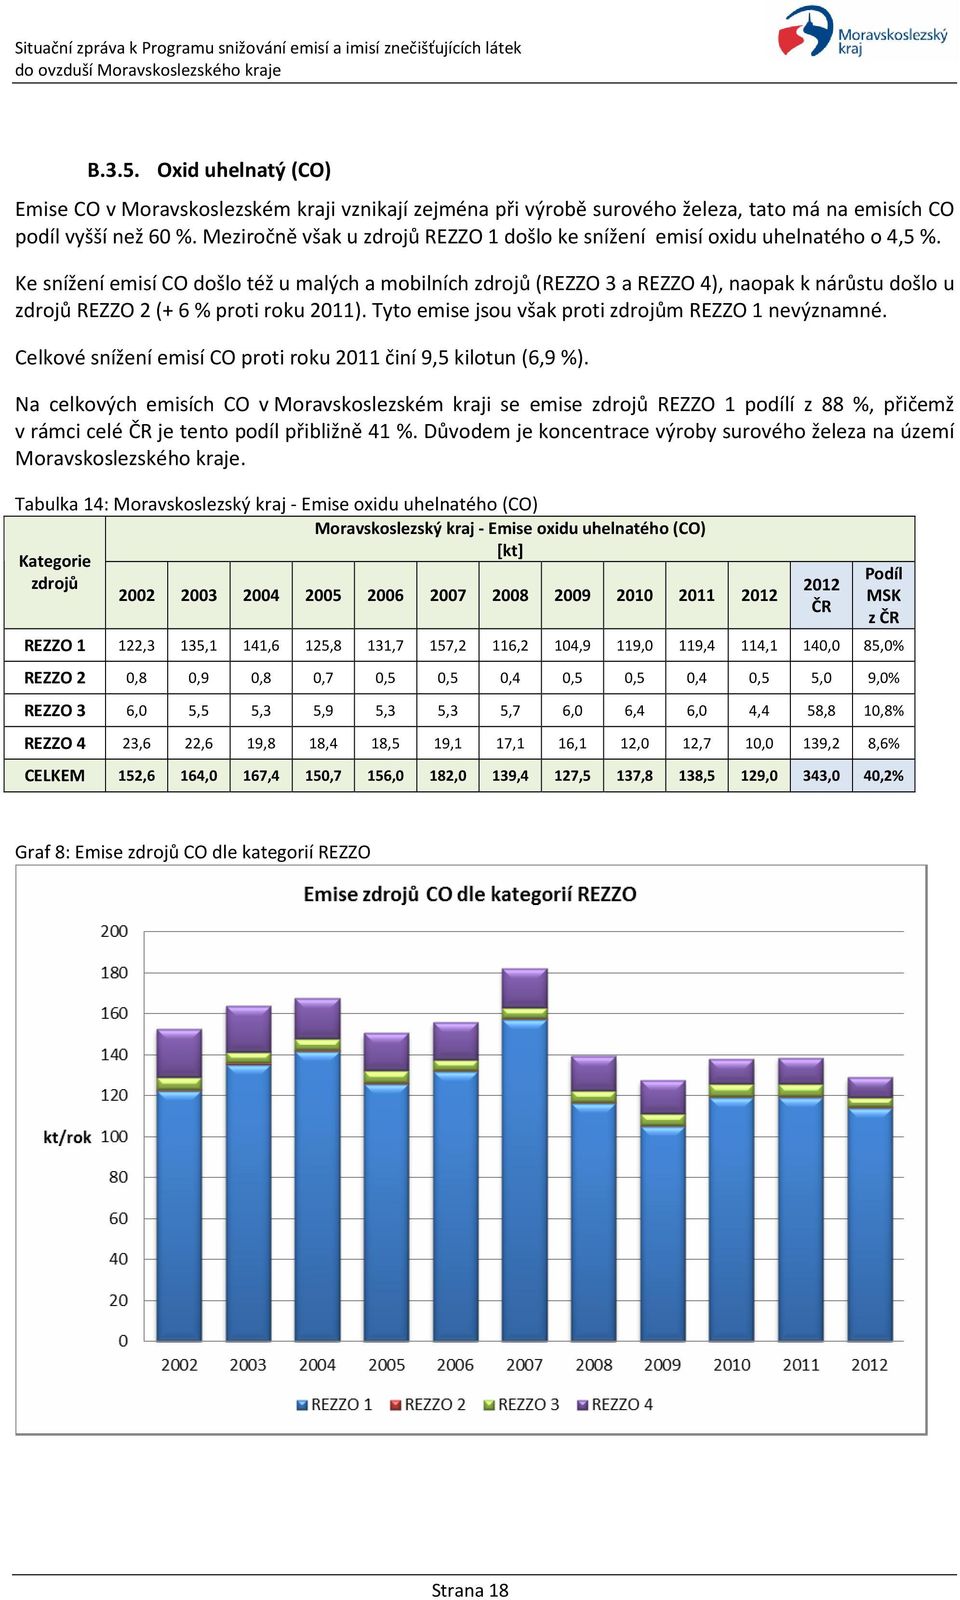 Ke snížení emisí CO došlo též u malých a mobilních zdrojů (REZZO 3 a REZZO 4), naopak k nárůstu došlo u zdrojů REZZO 2 (+ 6 % proti roku 2011). Tyto emise jsou však proti zdrojům REZZO 1 nevýznamné.